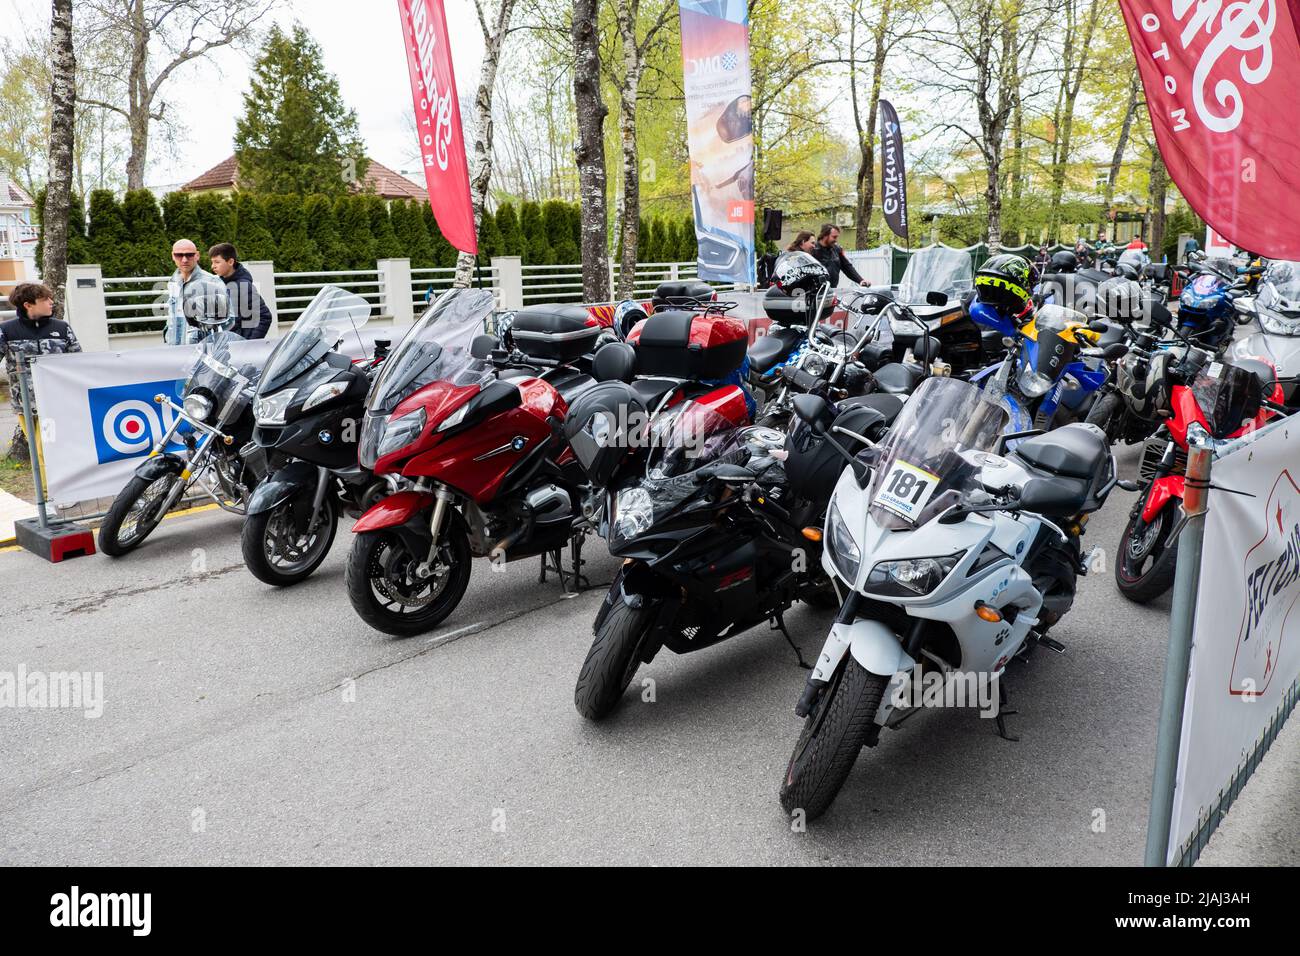 Ouverture de la saison estonienne de la moto. Rassemblement de motocyclistes ou rassemblement. Banque D'Images